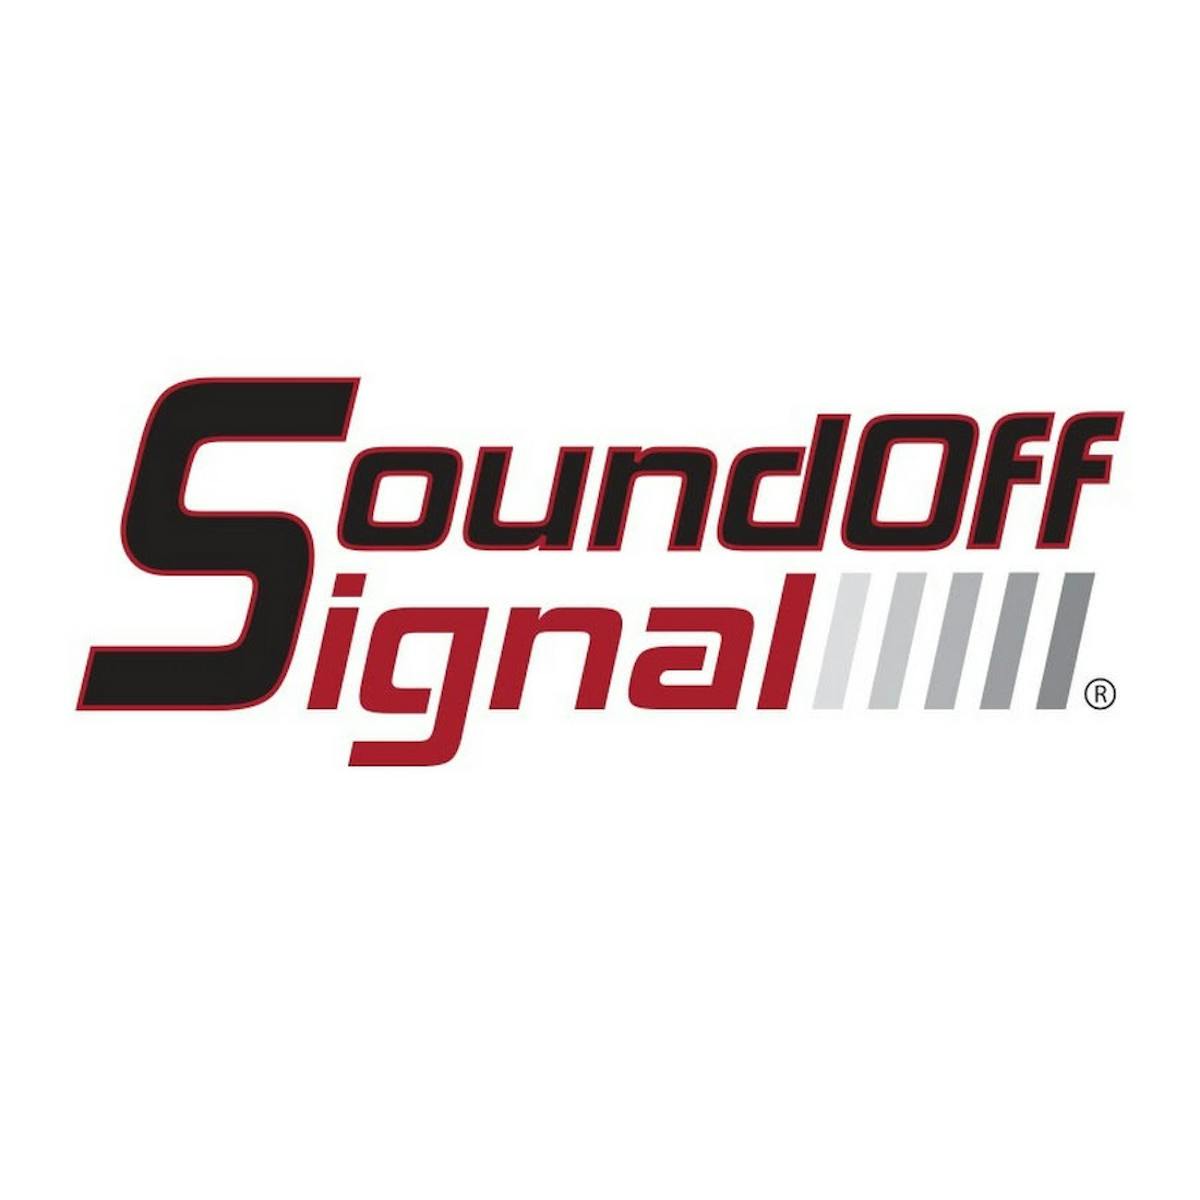 Soundoffsignal